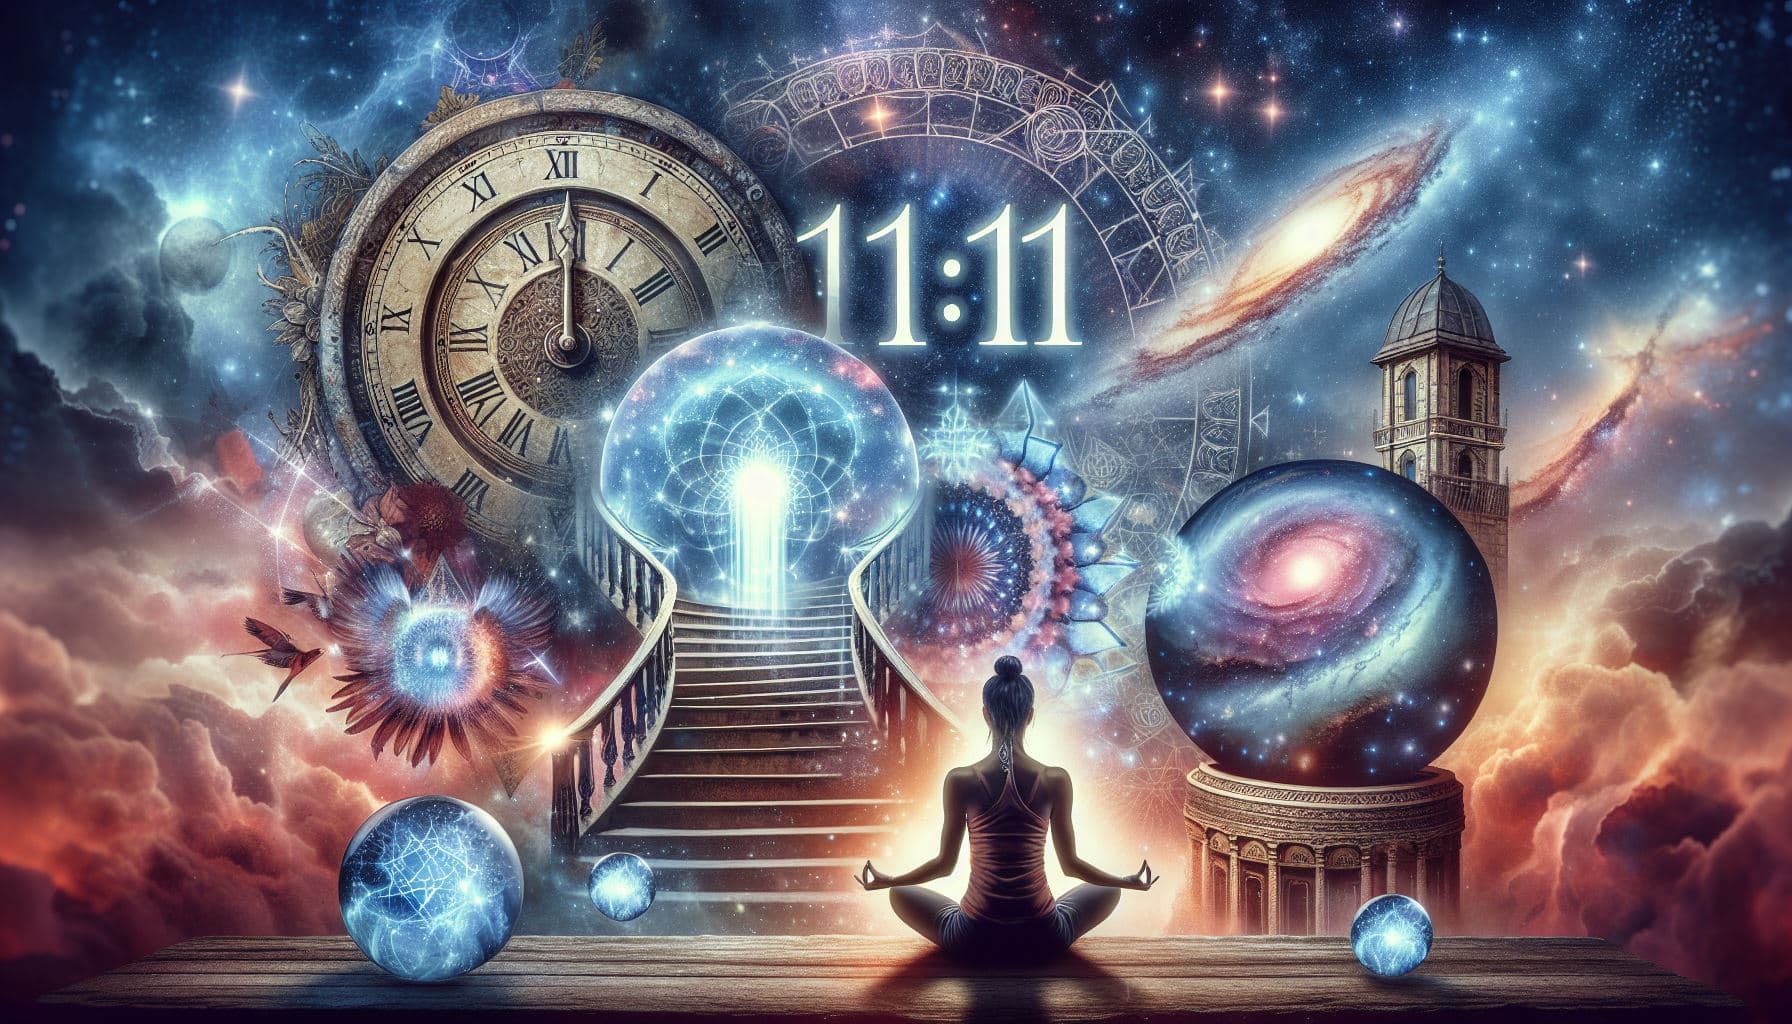 1111 significado espiritual